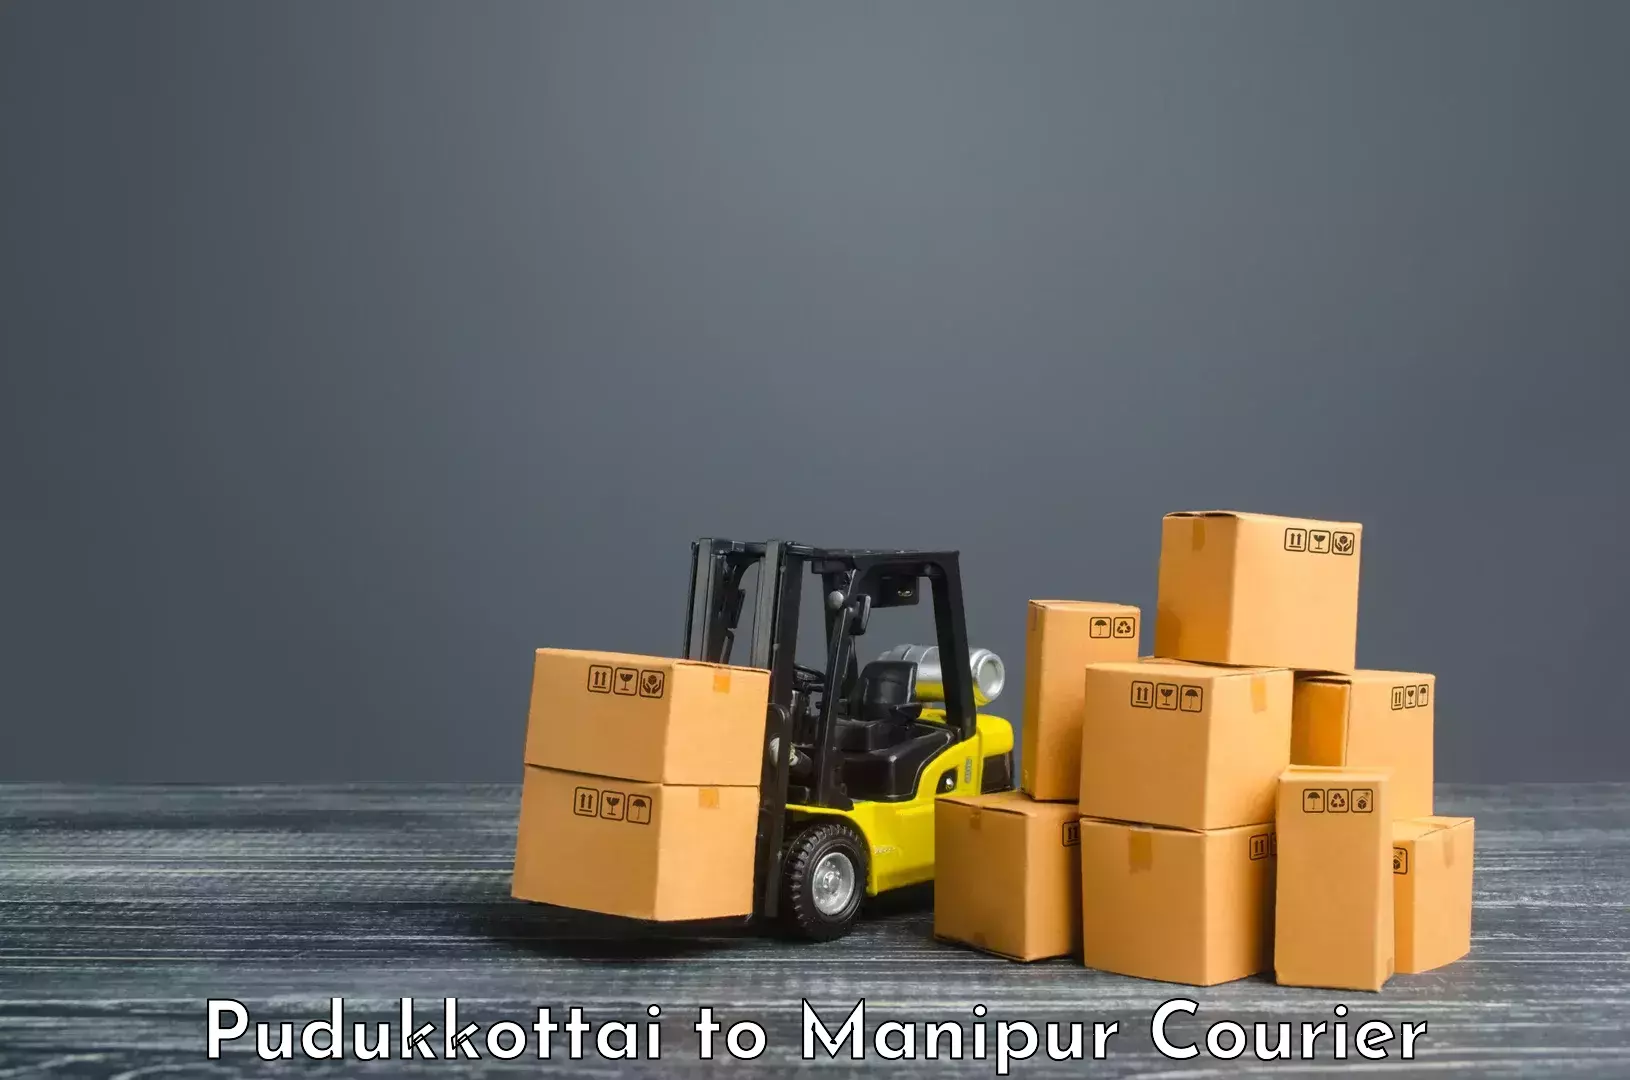 Supply chain efficiency Pudukkottai to Moirang